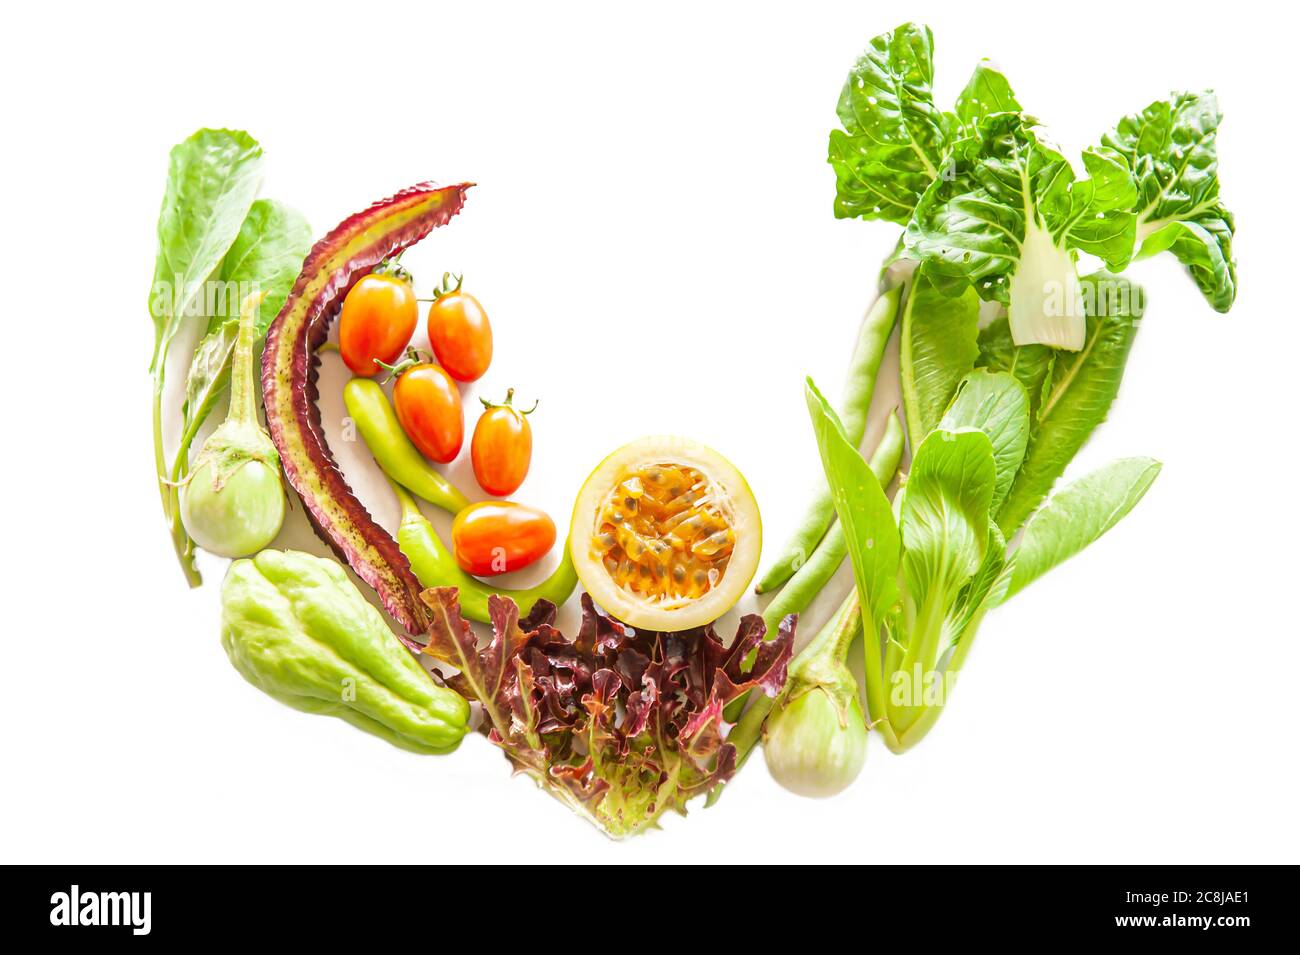 fruits et legumes frais biologiques